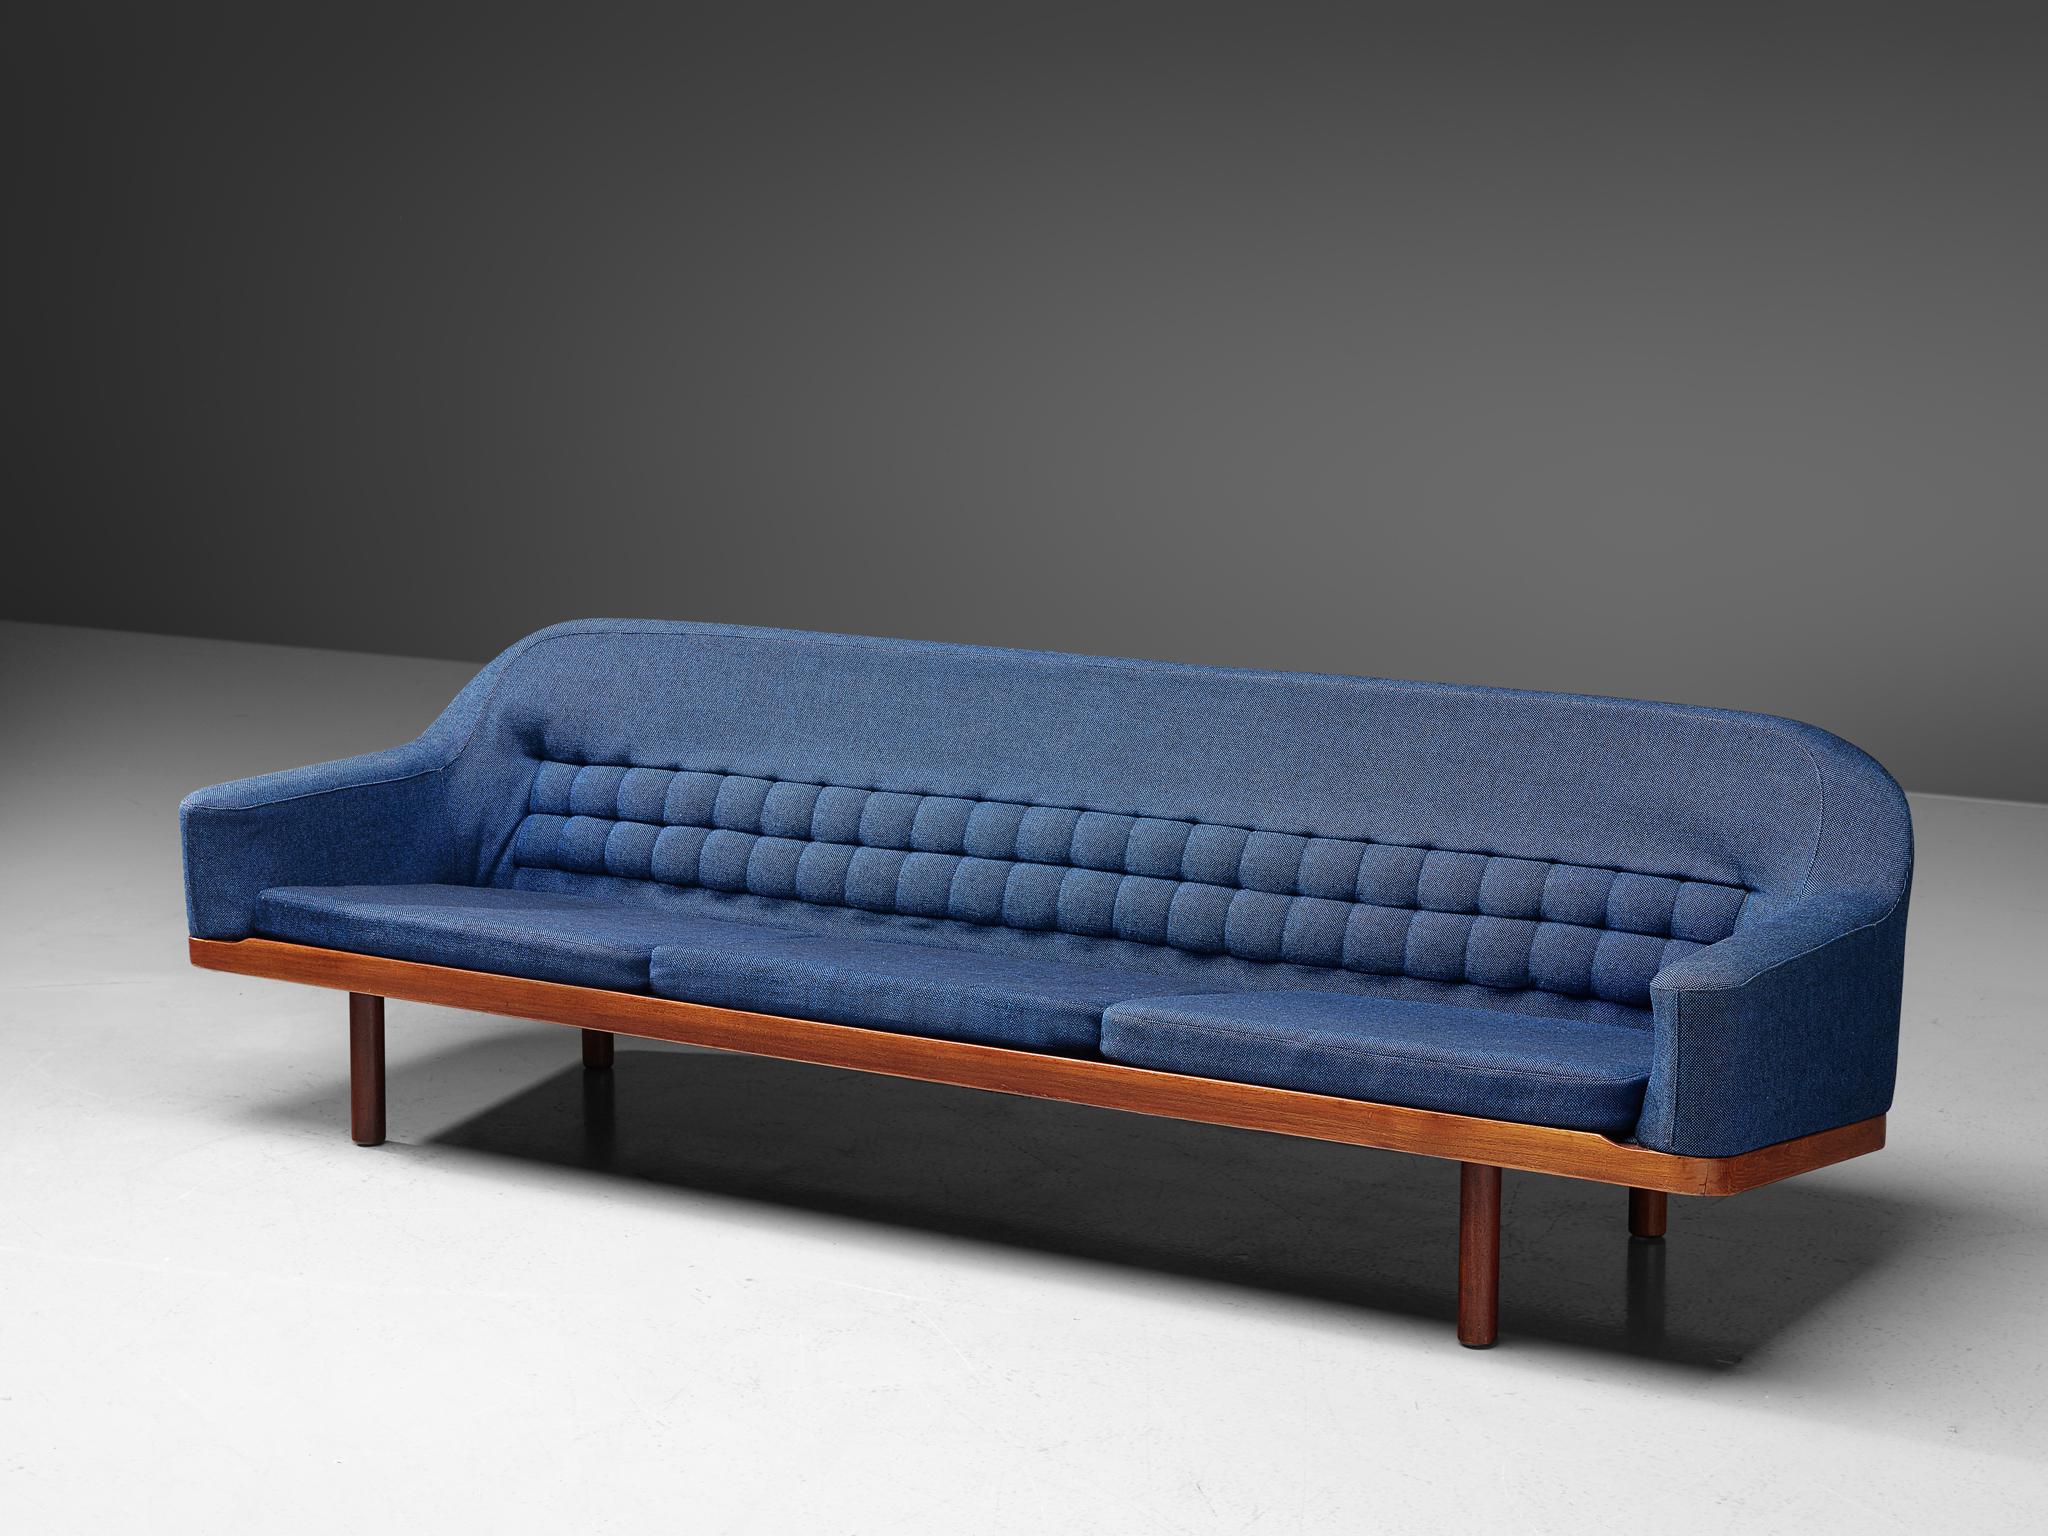 Arne Halvorsen, Sofa, Modell '2010', Teakholz, blauer Stoff, Norwegen, 1960er Jahre

Ein großes Sofa, entworfen vom norwegischen Designer Arne Halvorsen. Dieses Sofa zeichnet sich durch seine getuftete, geometrisch geformte Rückenlehne in